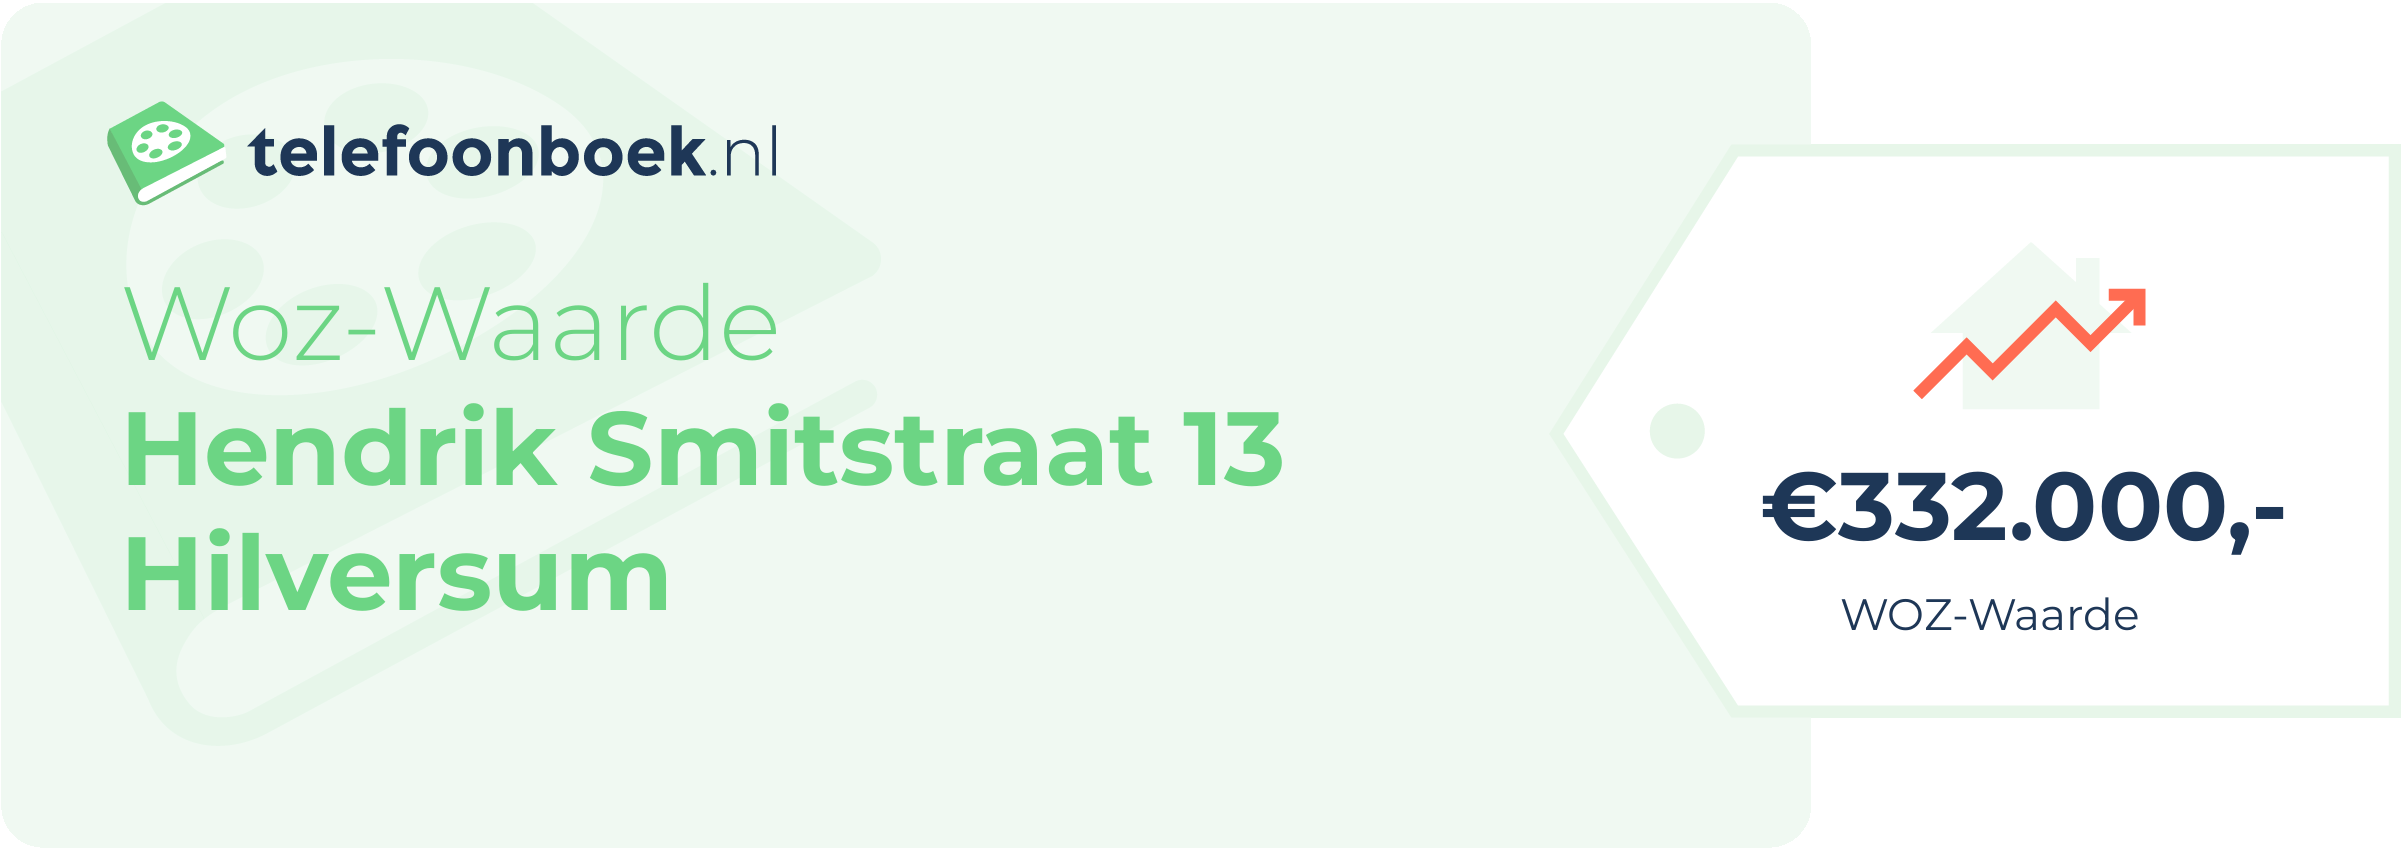 WOZ-waarde Hendrik Smitstraat 13 Hilversum